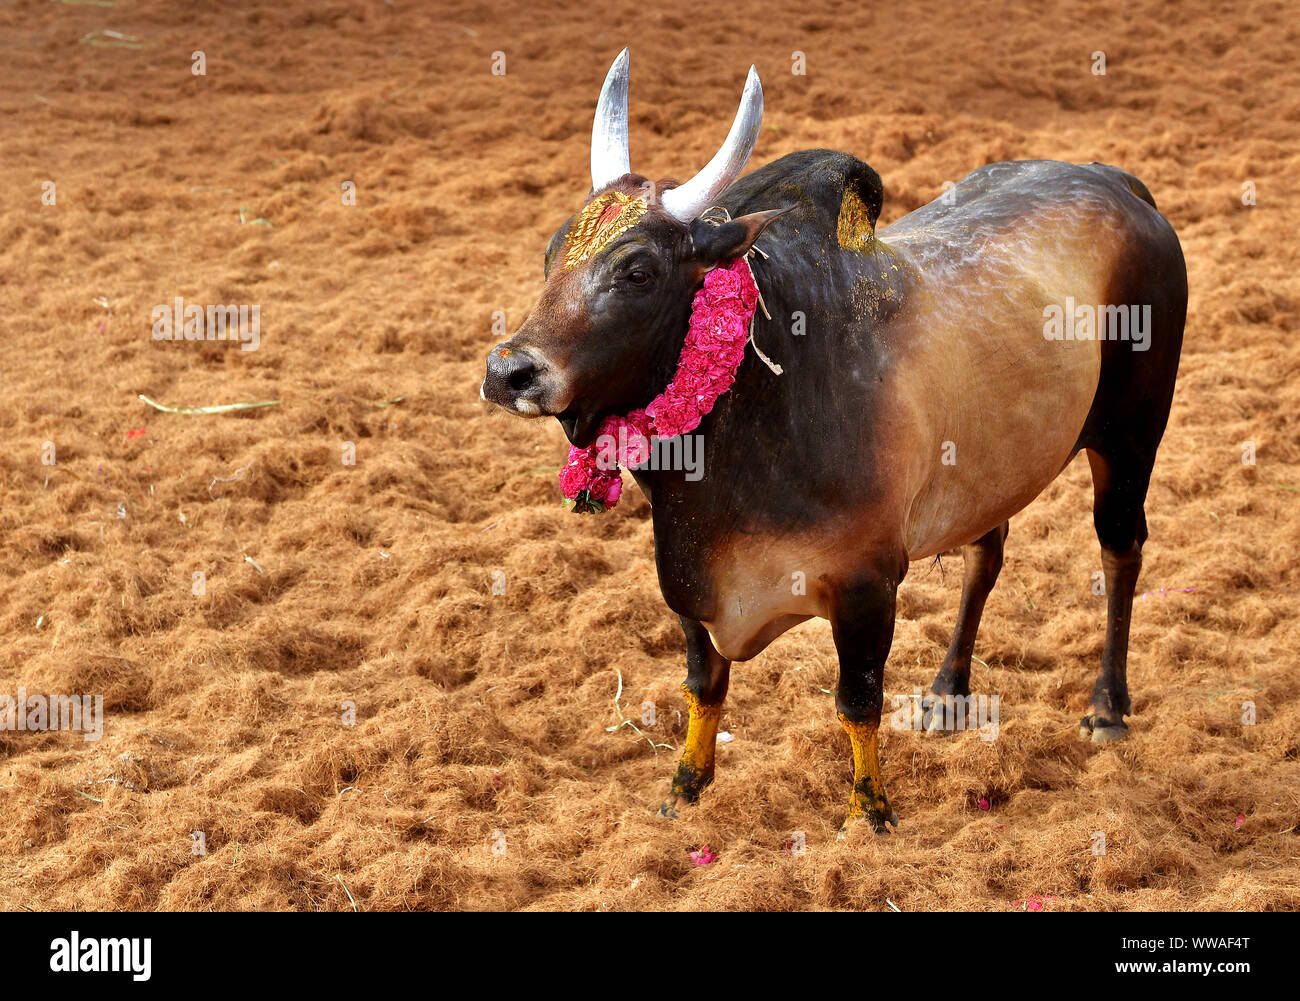 Ritratto di un toro Jallikattu :corna maestose taglienti che sono il segno distintivo di un toro jallikattu Kangayam Kaalai ( toro ).tori indiani, Tamil Nadu. Foto Stock